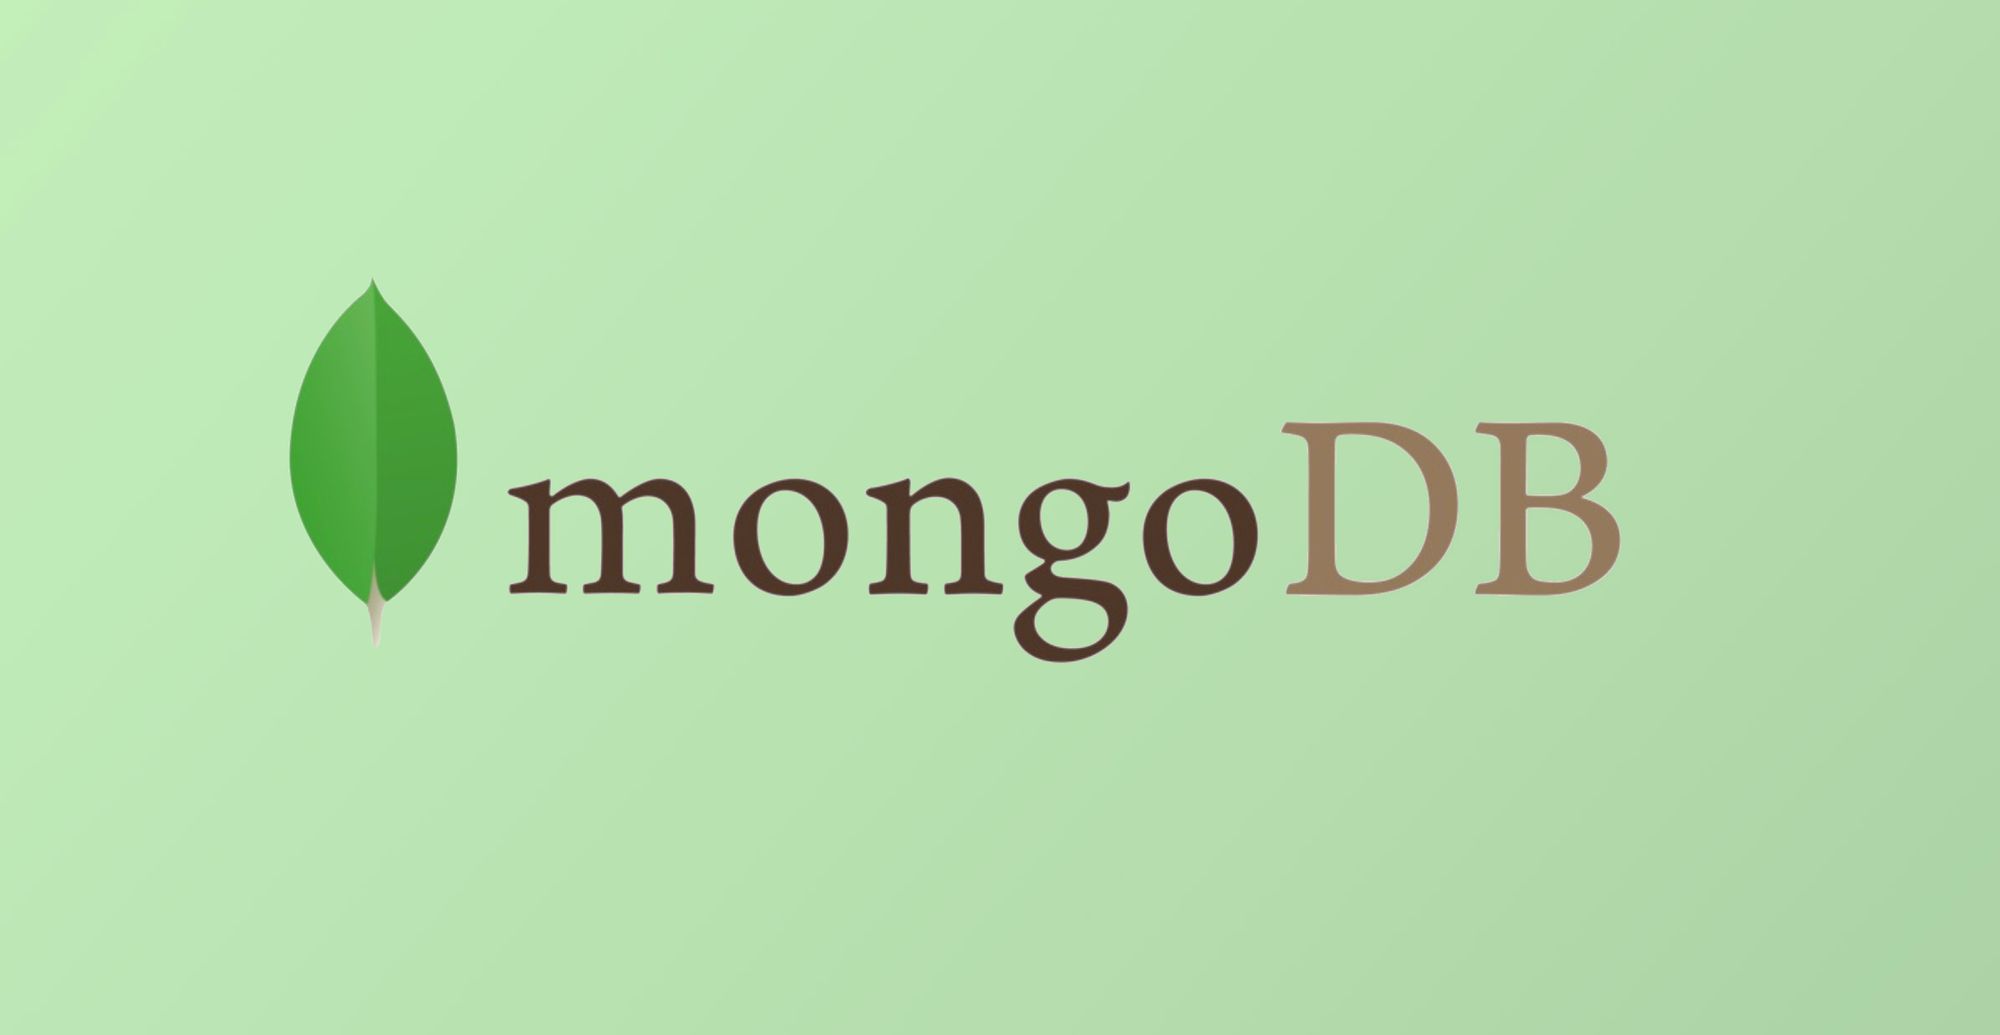 Rancher 2: Mongo replicaset SSL